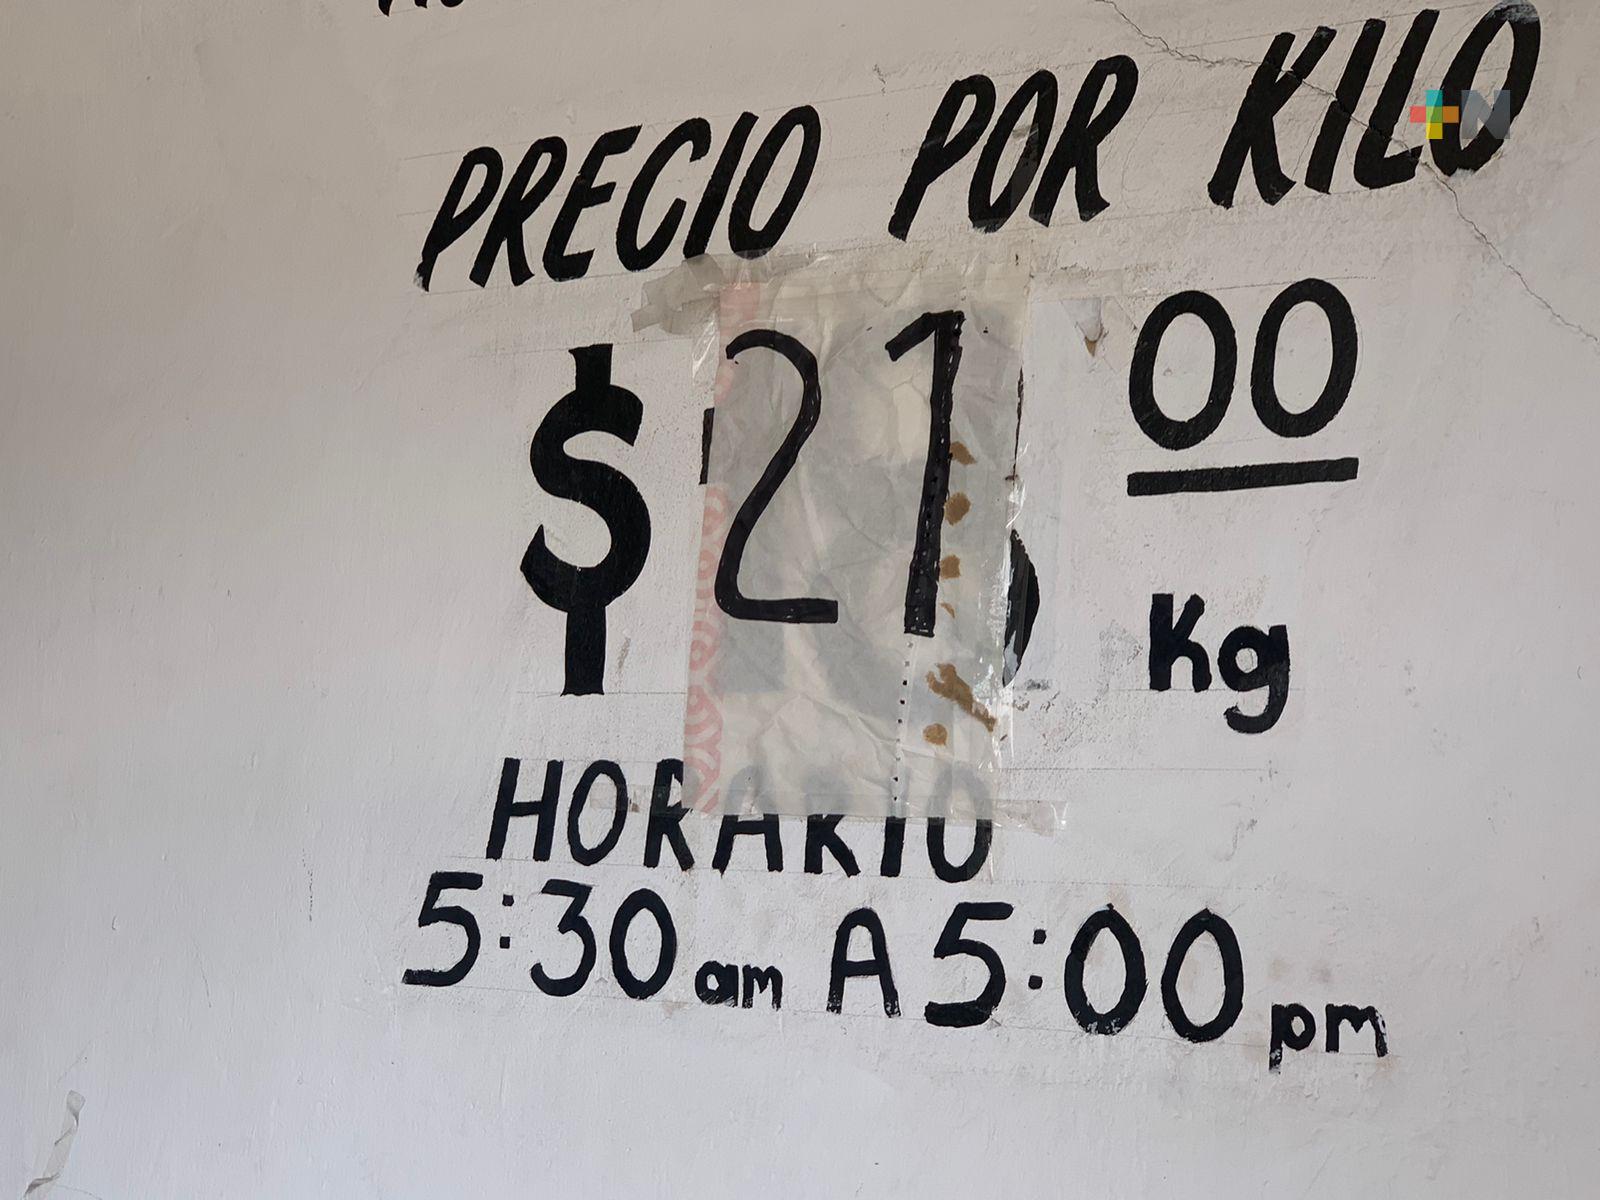 Coatzacoalcos: Competencia desleal provoca inestabilidad en precio de tortilla